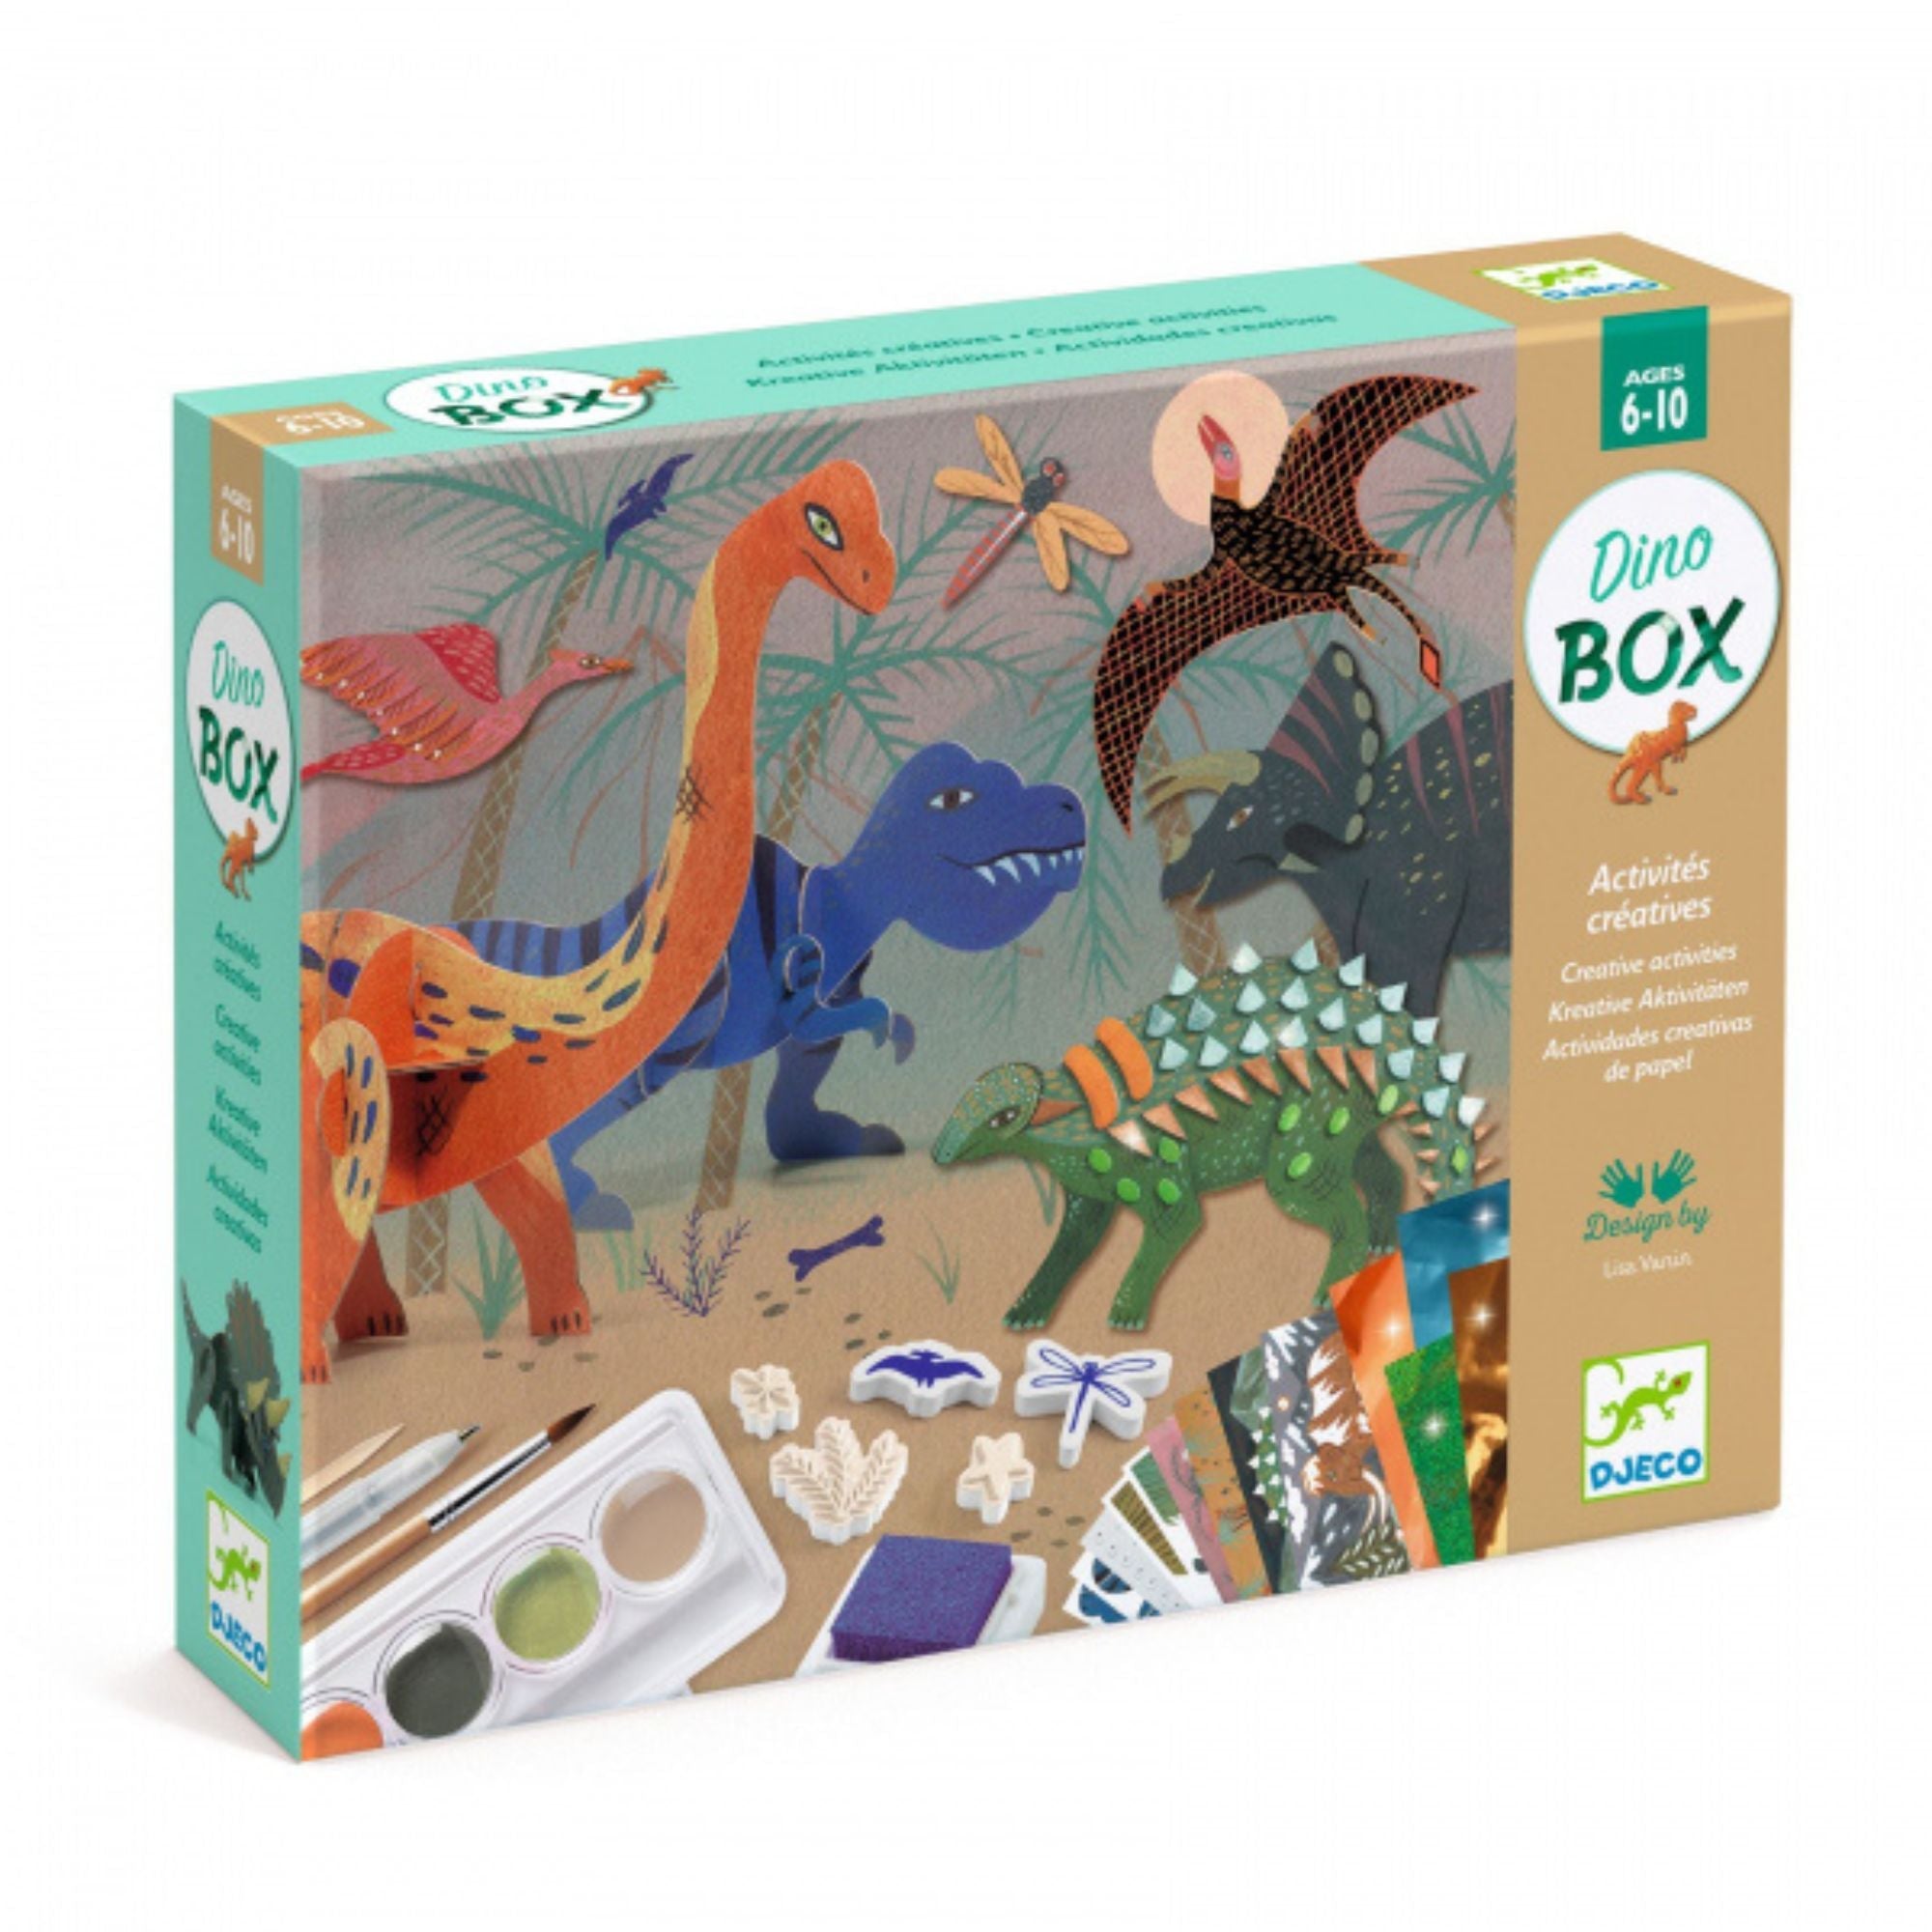 Djeco : Multi-Activity Kit / Fairy Box